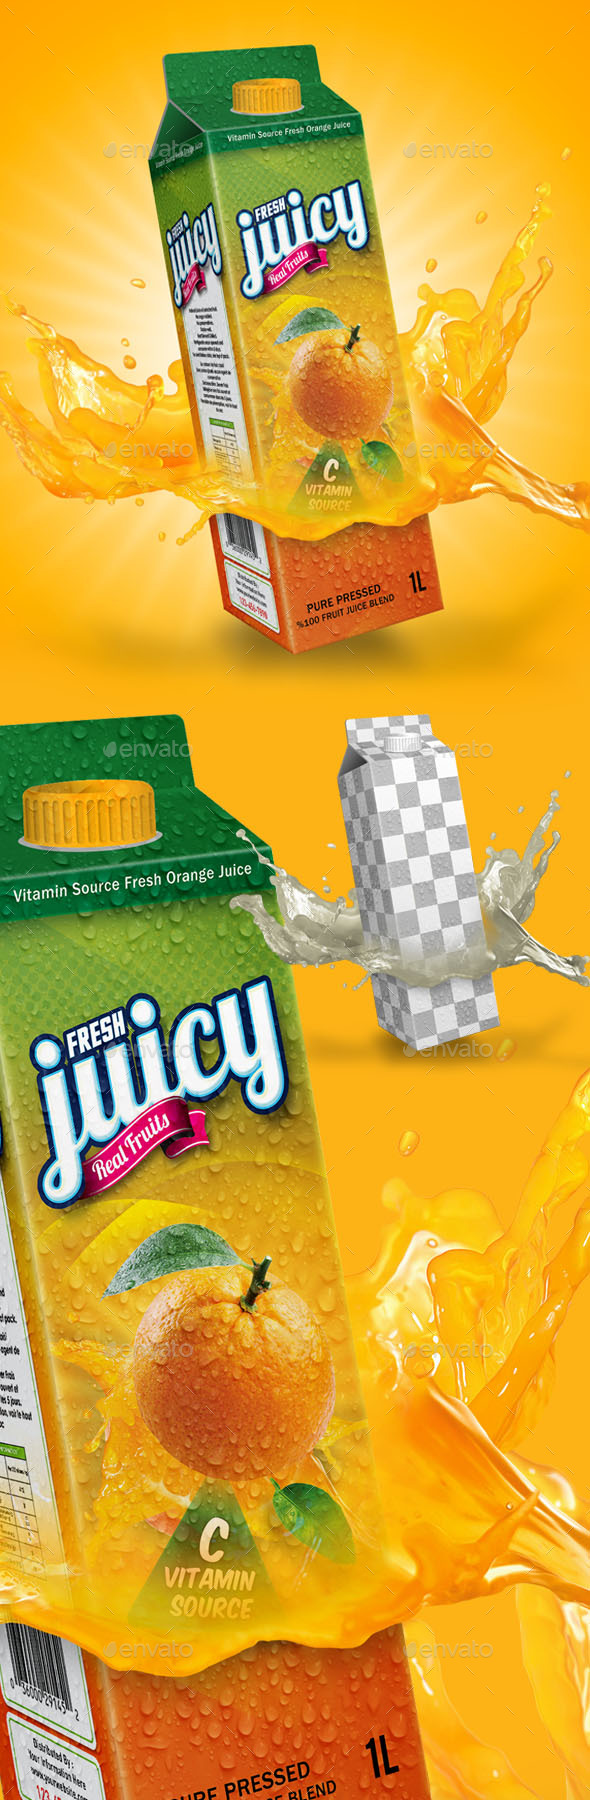 Fruit Juice Box Mockup